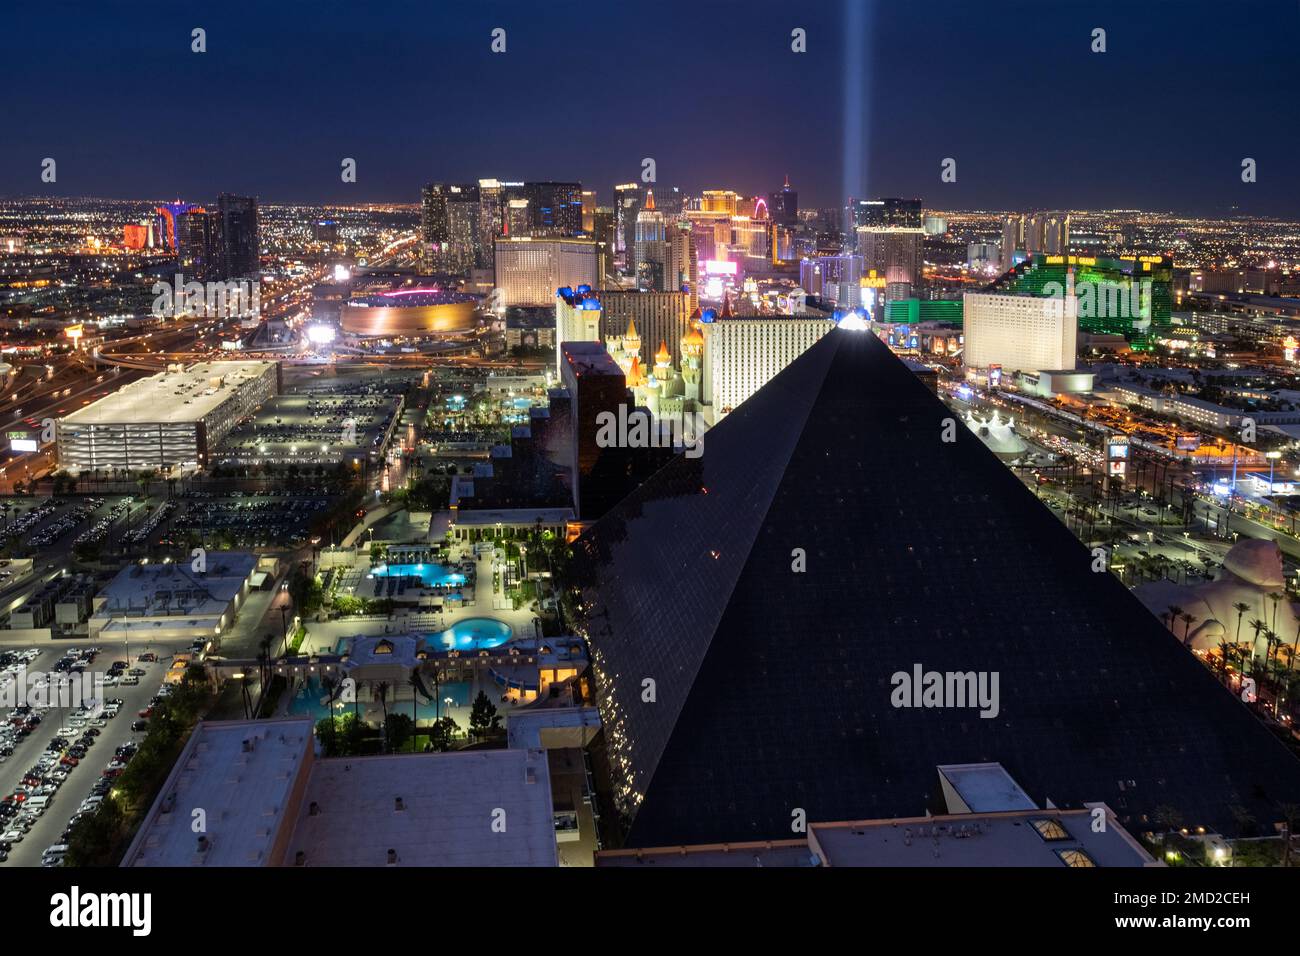 Erhöhte Aussicht auf das Luxor Hotel und Casino und die Gegend um den Las Vegas Strip bei Nacht, Las Vegas, Nevada, USA Stockfoto